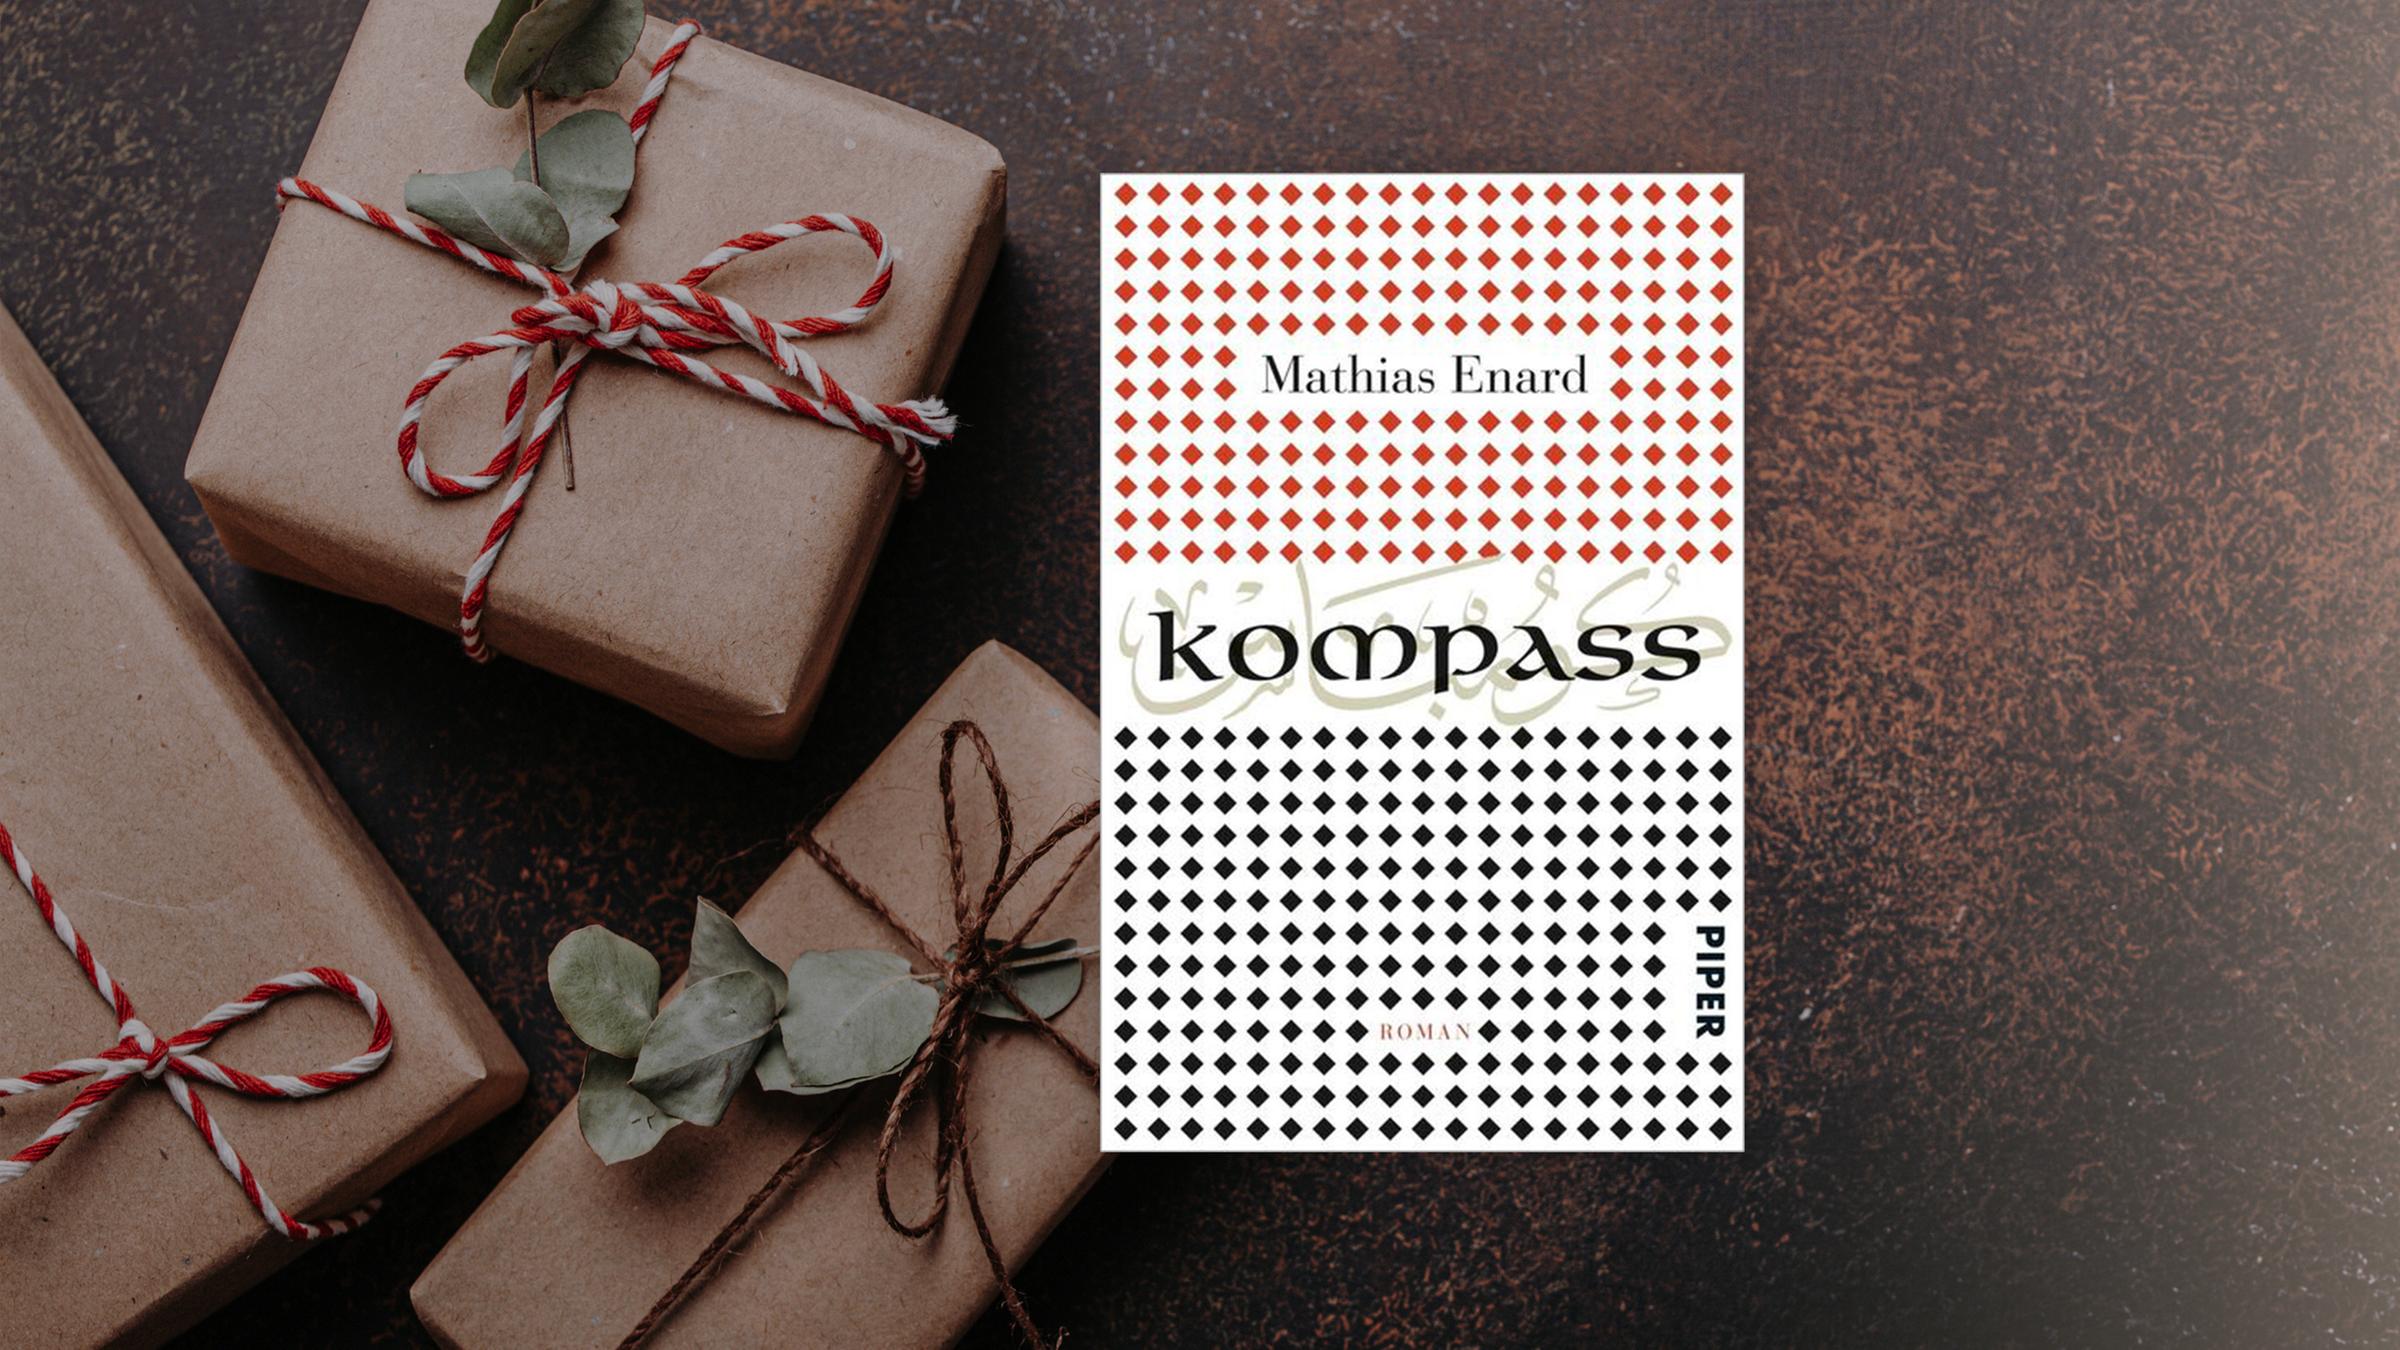 Buchcover von Mathias Enard "Kompass". Im Hintergrund liegen ...</p>

                        <a href=